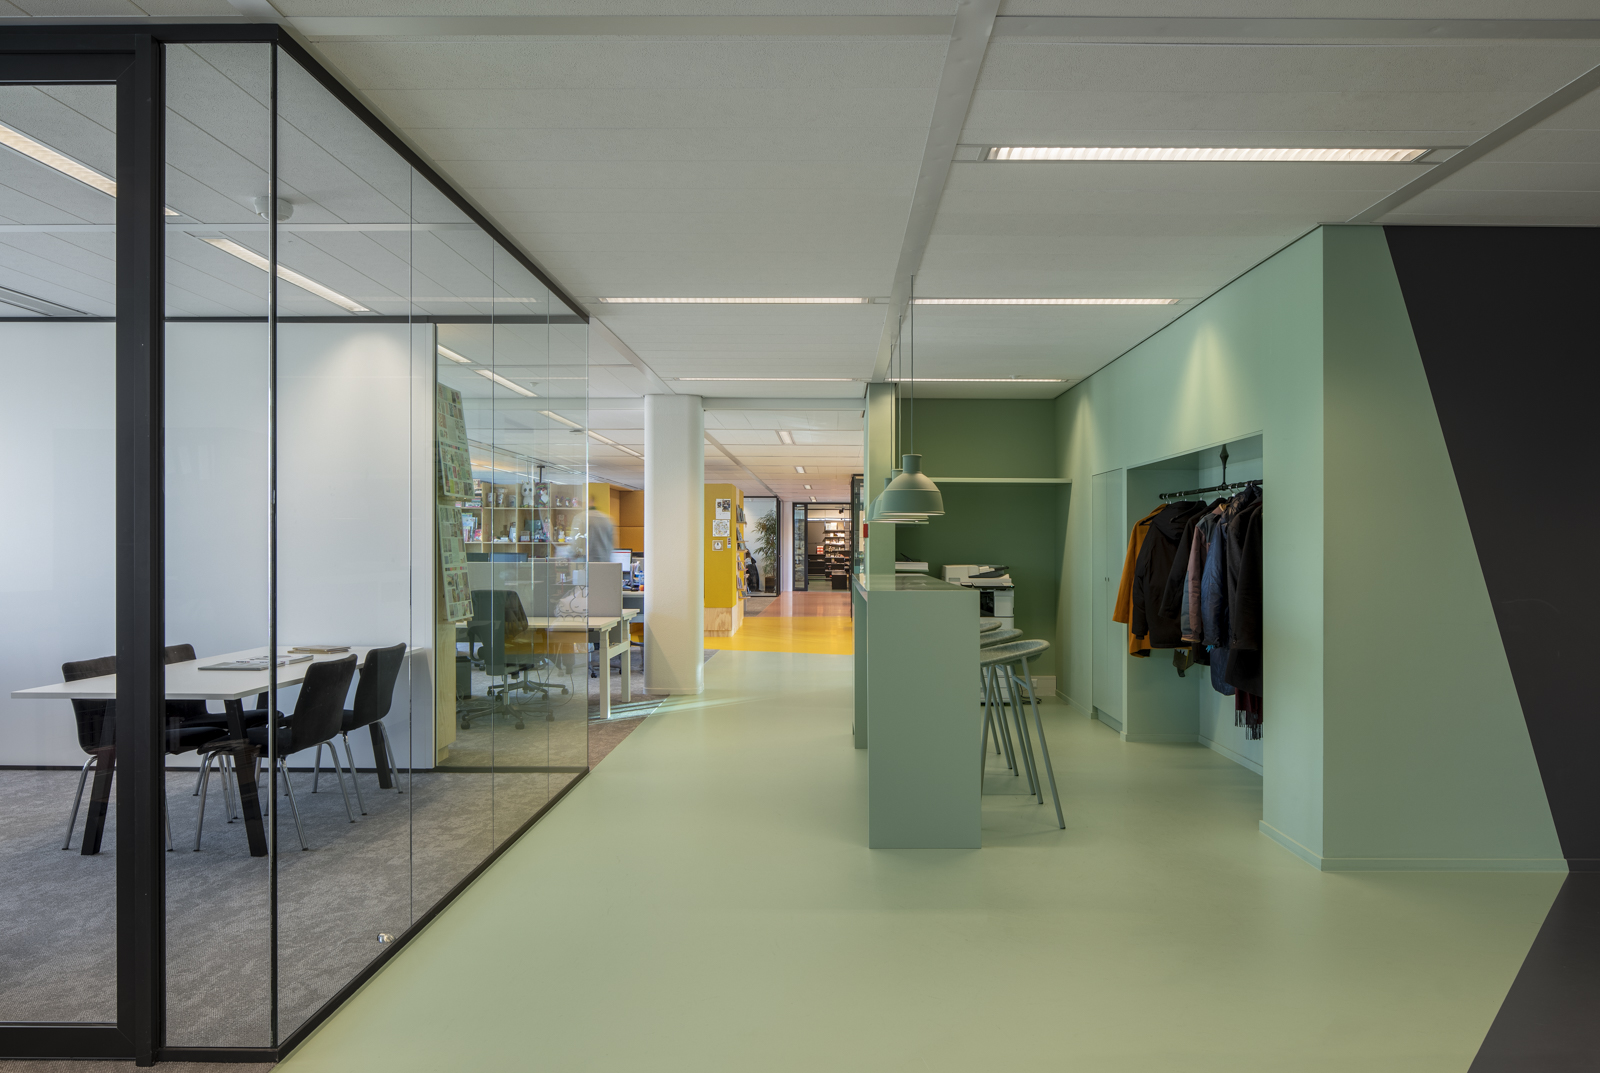 https://www.heyligersarchitects.nl/wp-content/uploads/2021/10/Bruna_03_interieur_heyligers_architect_kantoor_office_design_WoutervanderSar_19112100-32.jpg